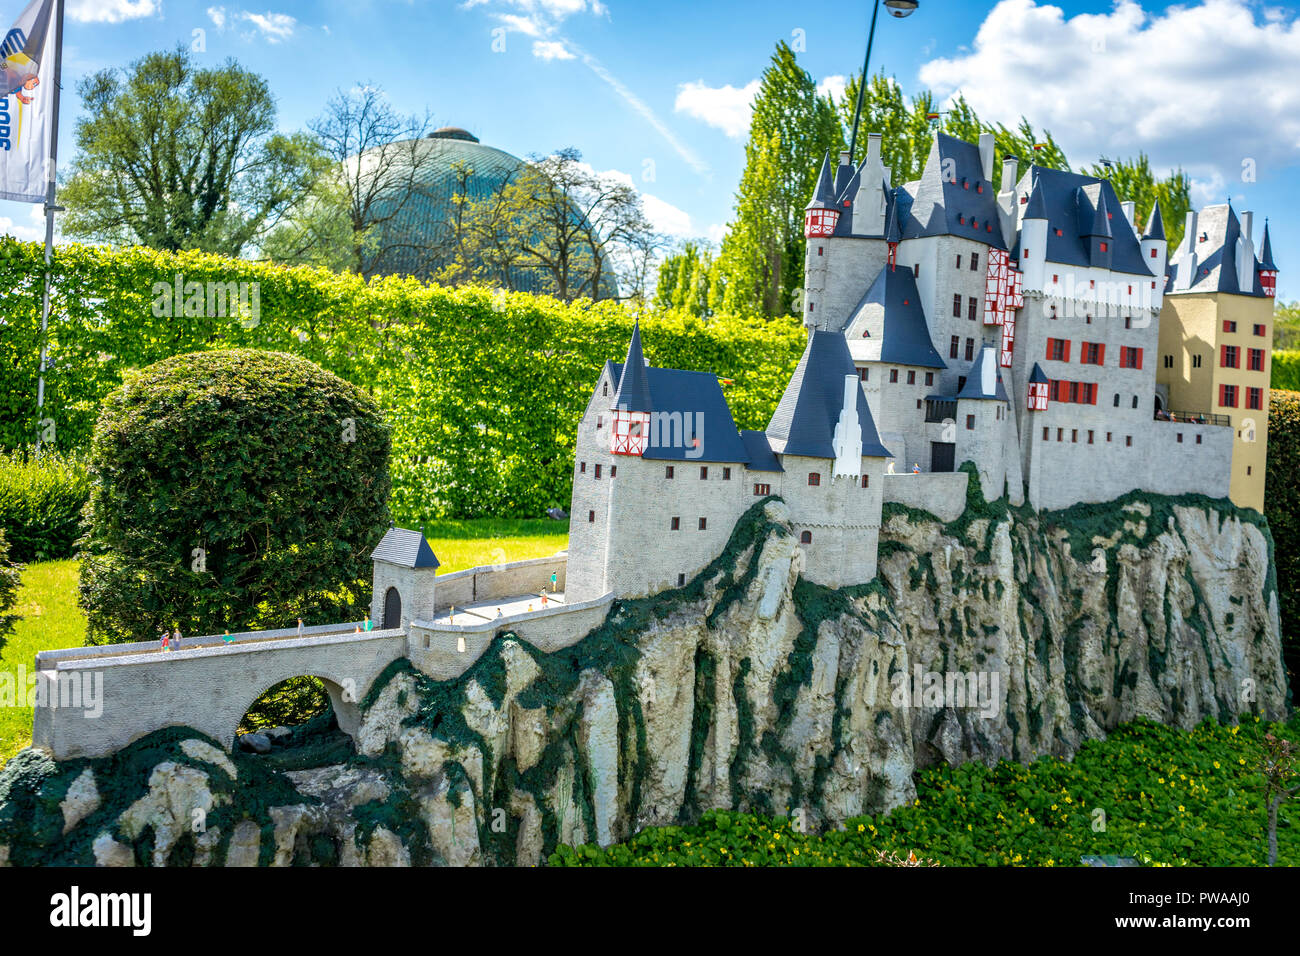 Bruxelles, Belgique - 17 Avril 2017 : Miniatures au parc Mini-Europe - reproduction de la château Eltz, Germany, Europe Banque D'Images